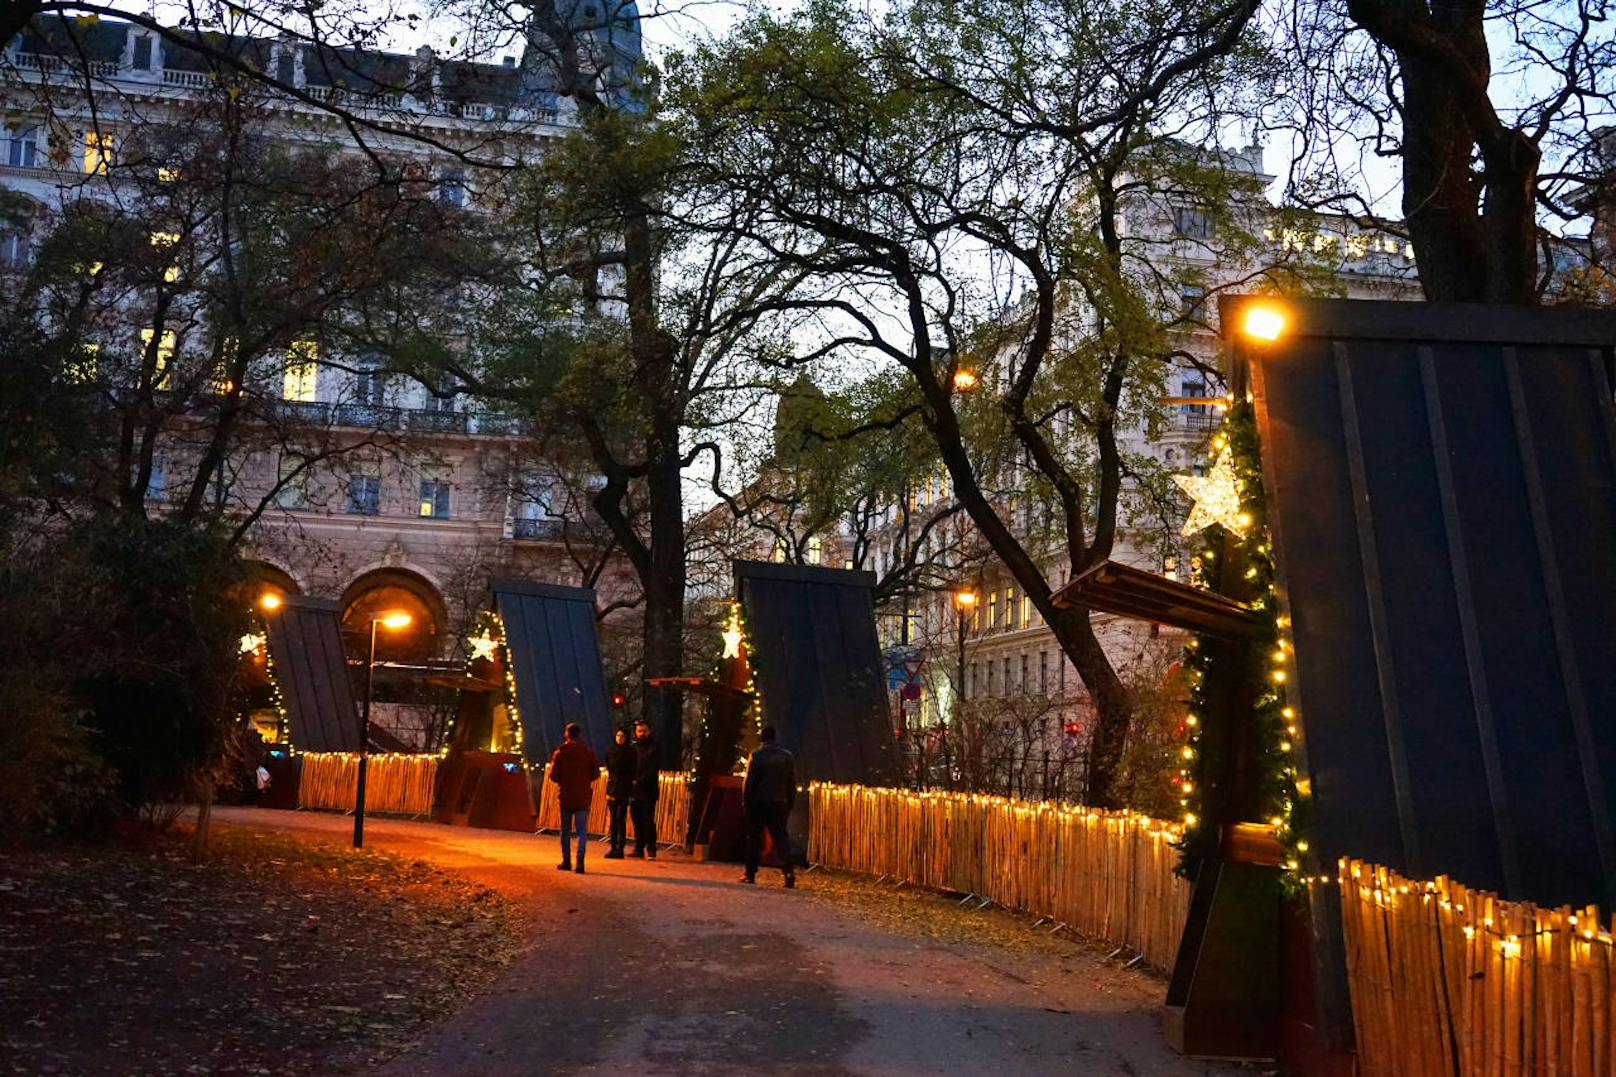 Romantische Momente lassen sich auch bei einem gemütlichen Spaziergang durch den Weihnachtstraum erleben.